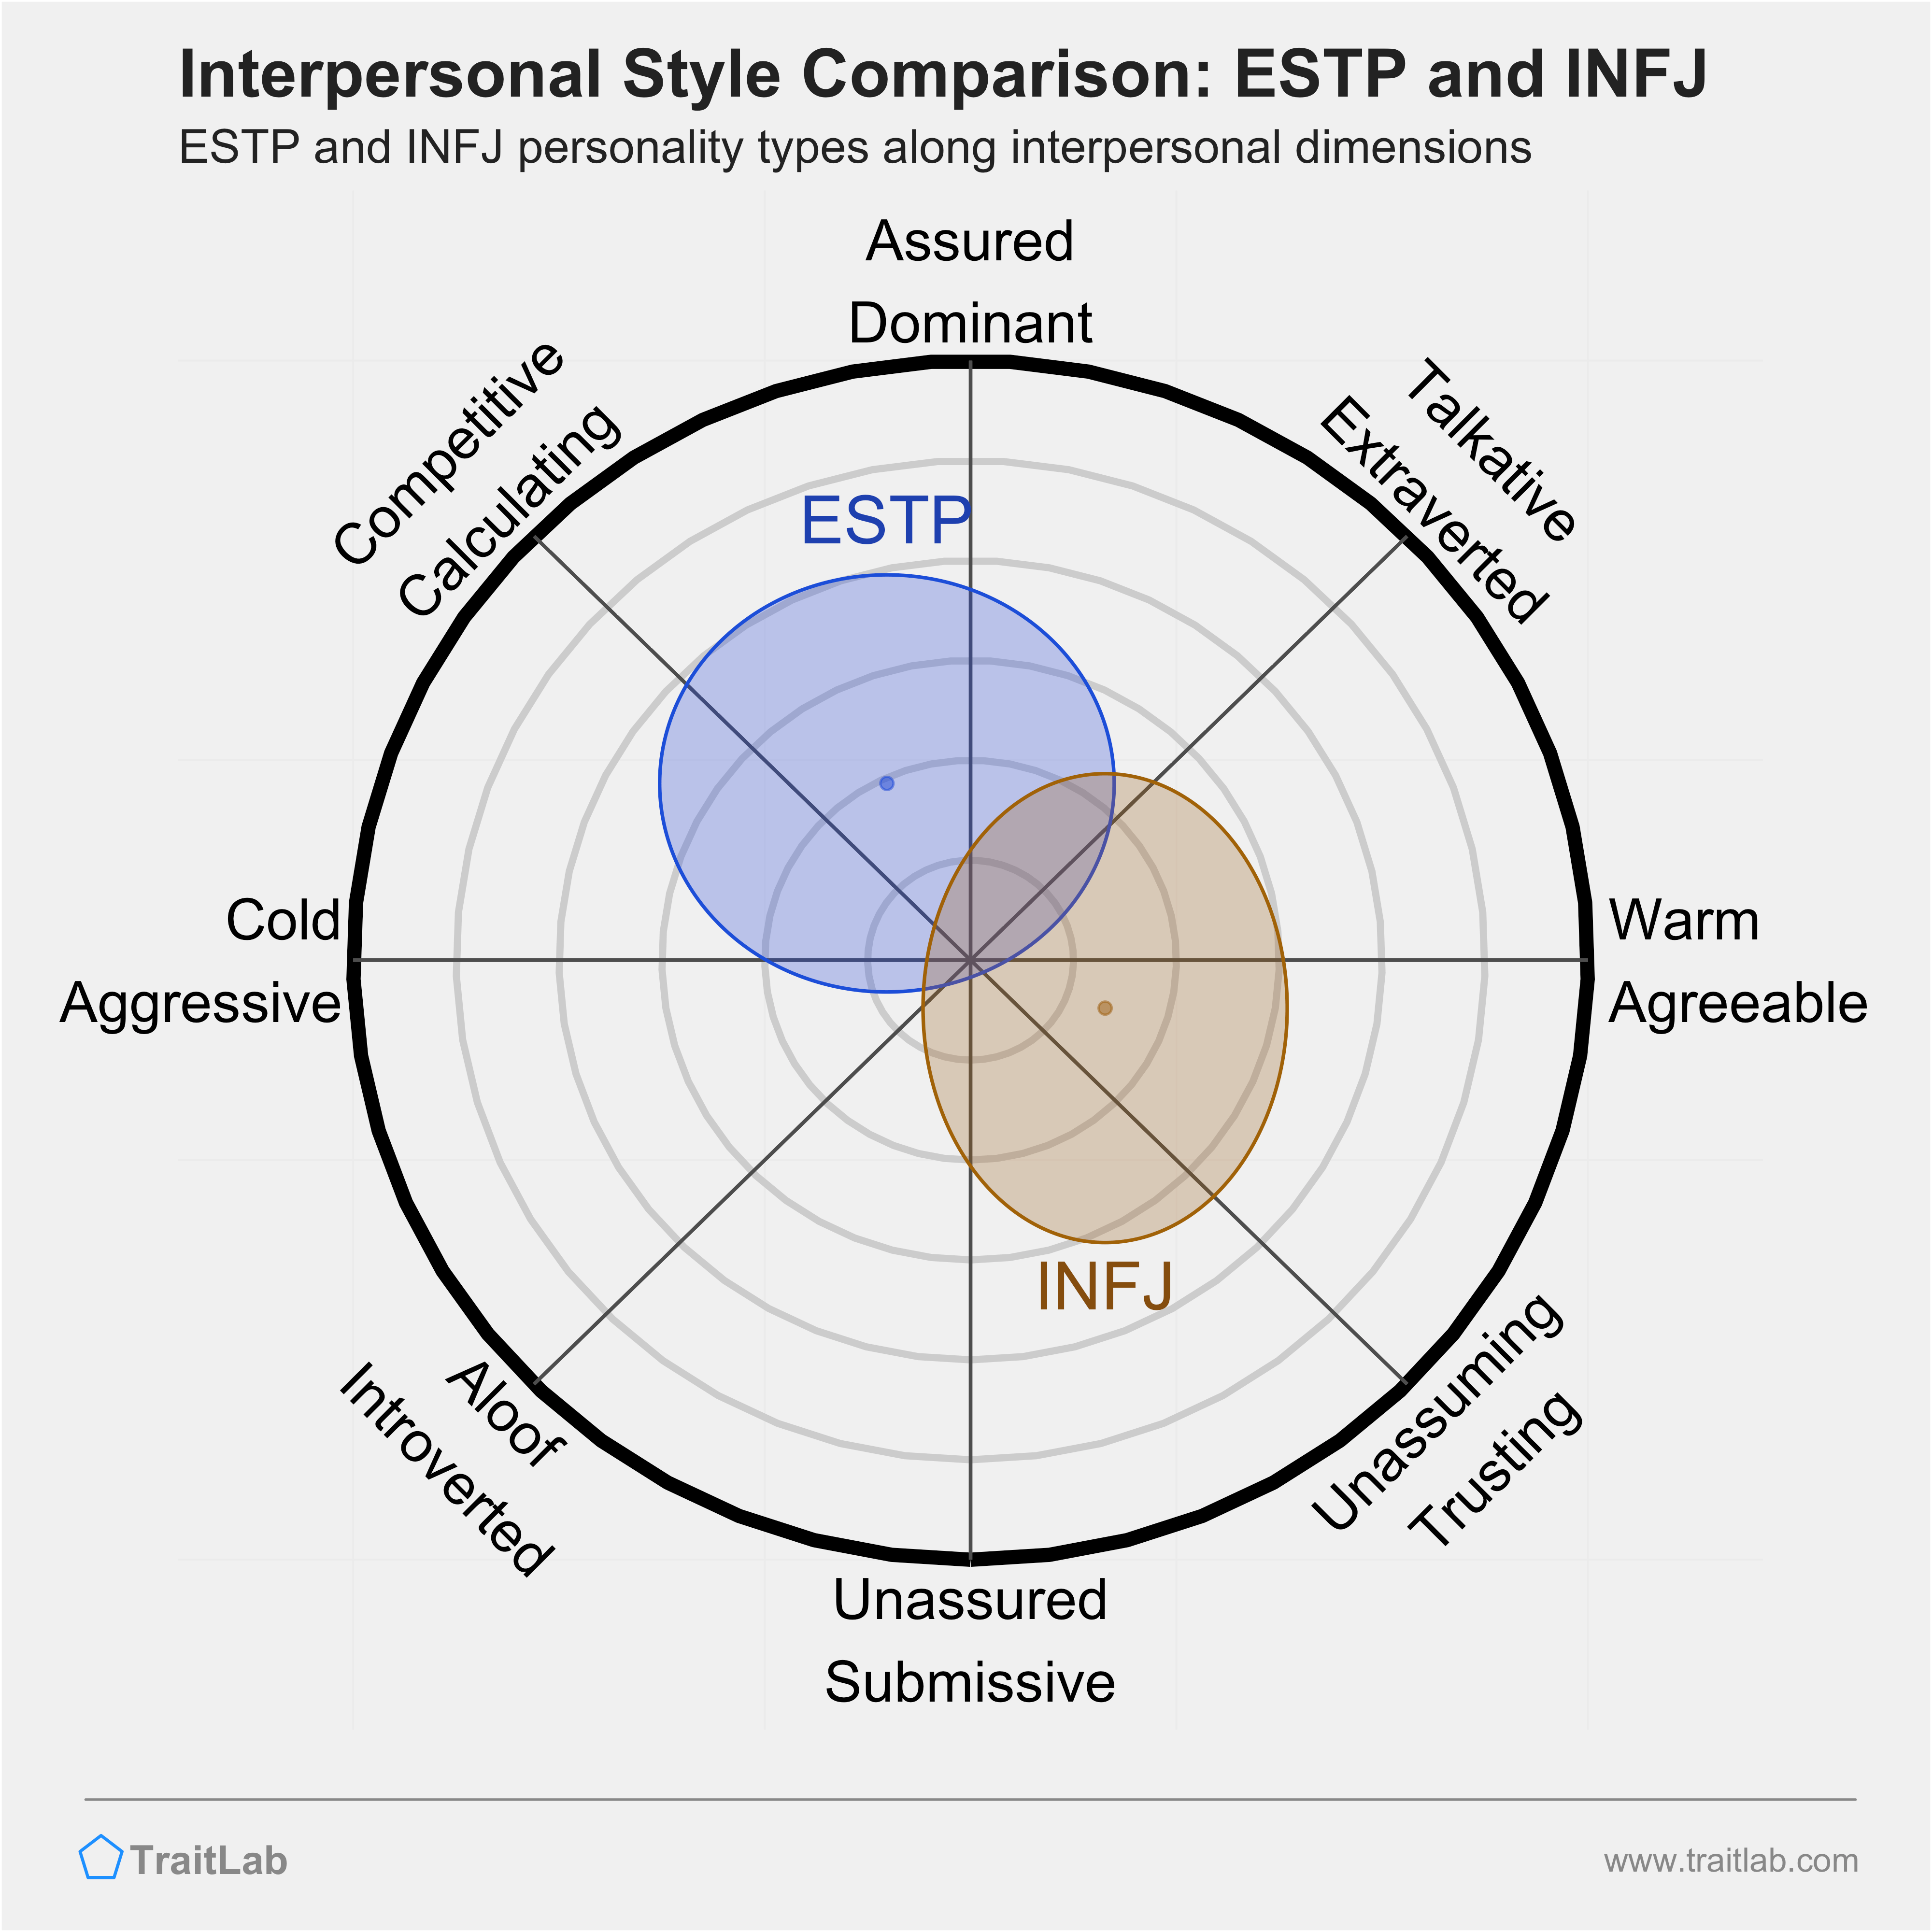 ESTP and INFJ comparison across interpersonal dimensions